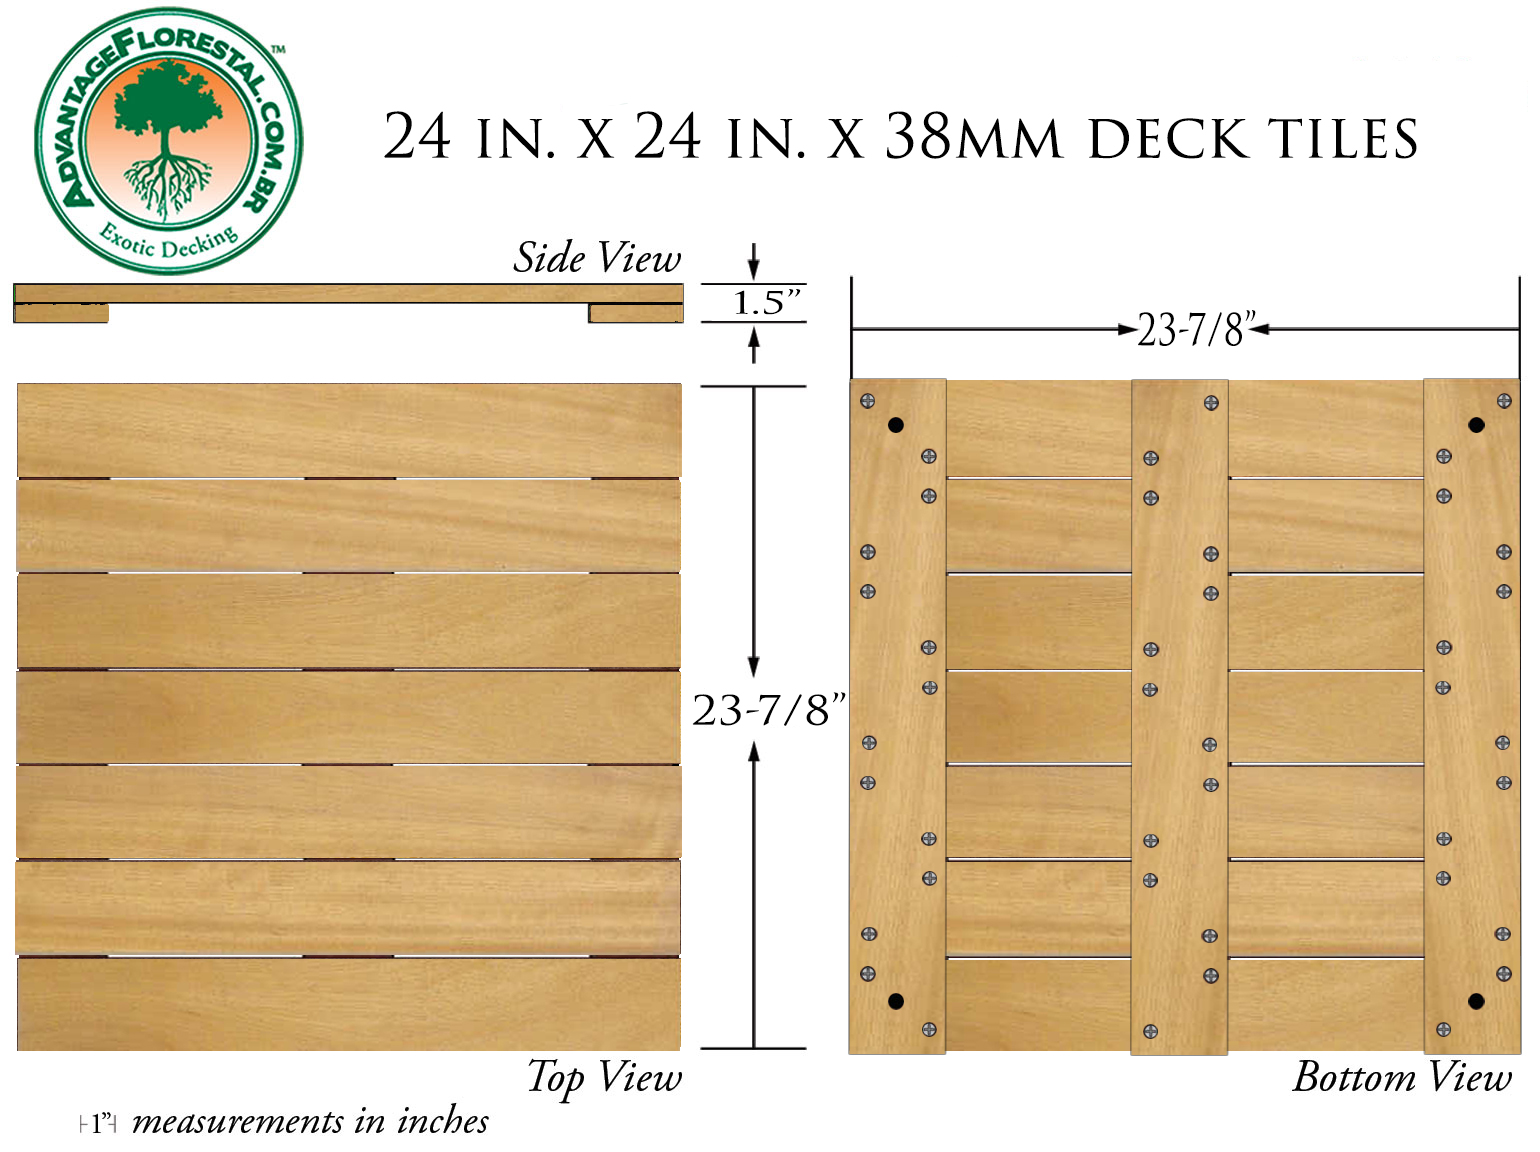 Tatajuba Deck Tile 24 in. x 24 in. x 38mm